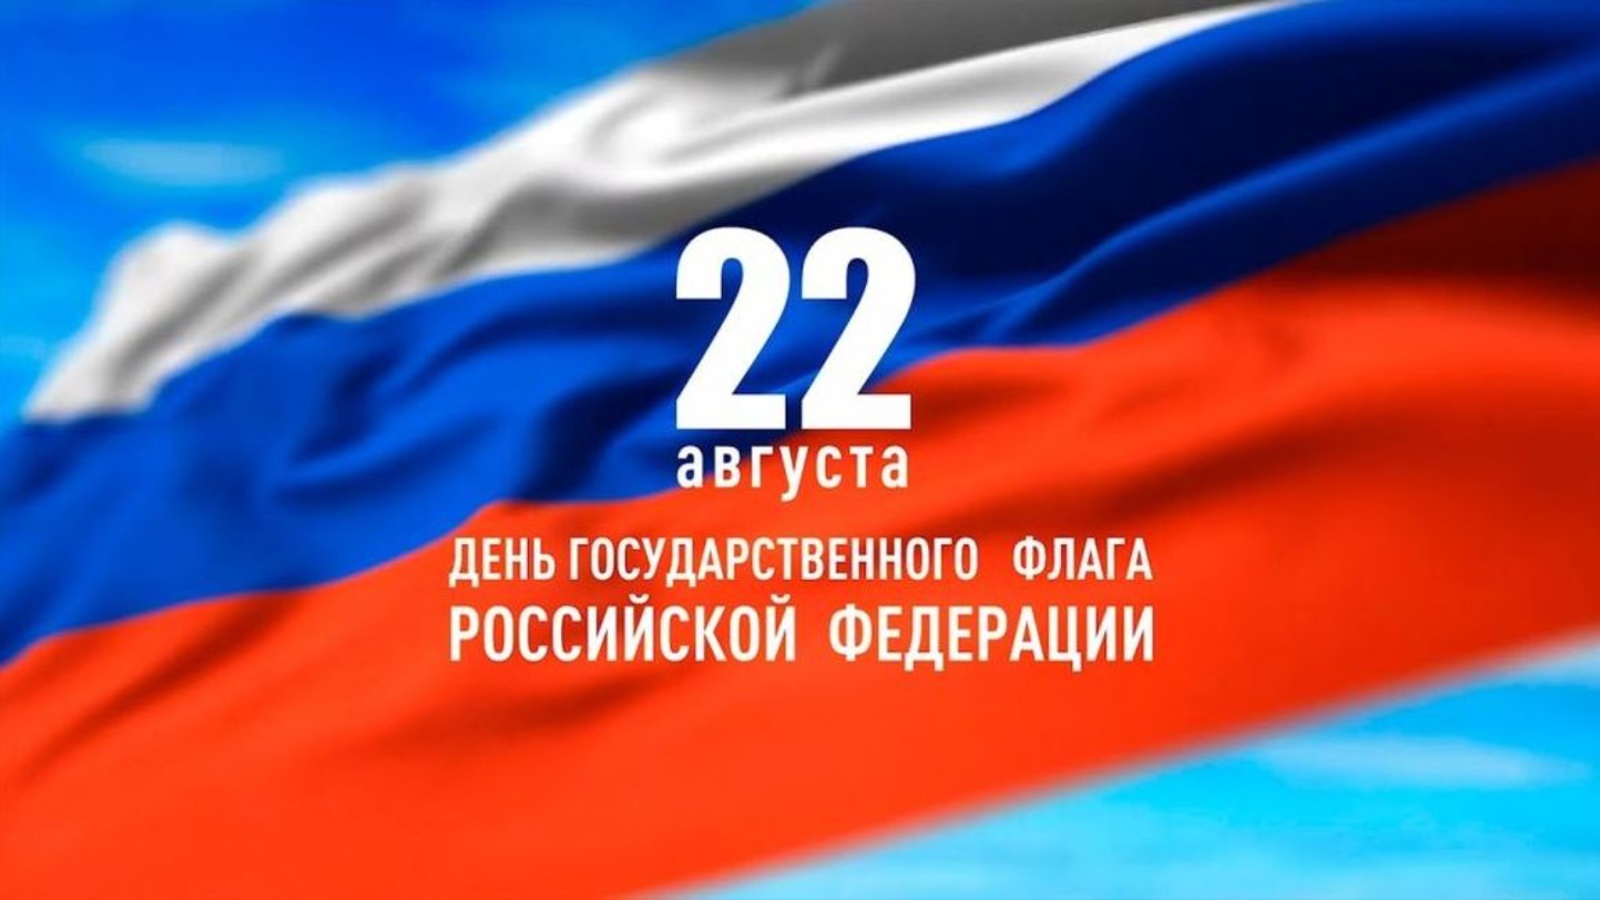 Поздравляем с днем государственного флага России